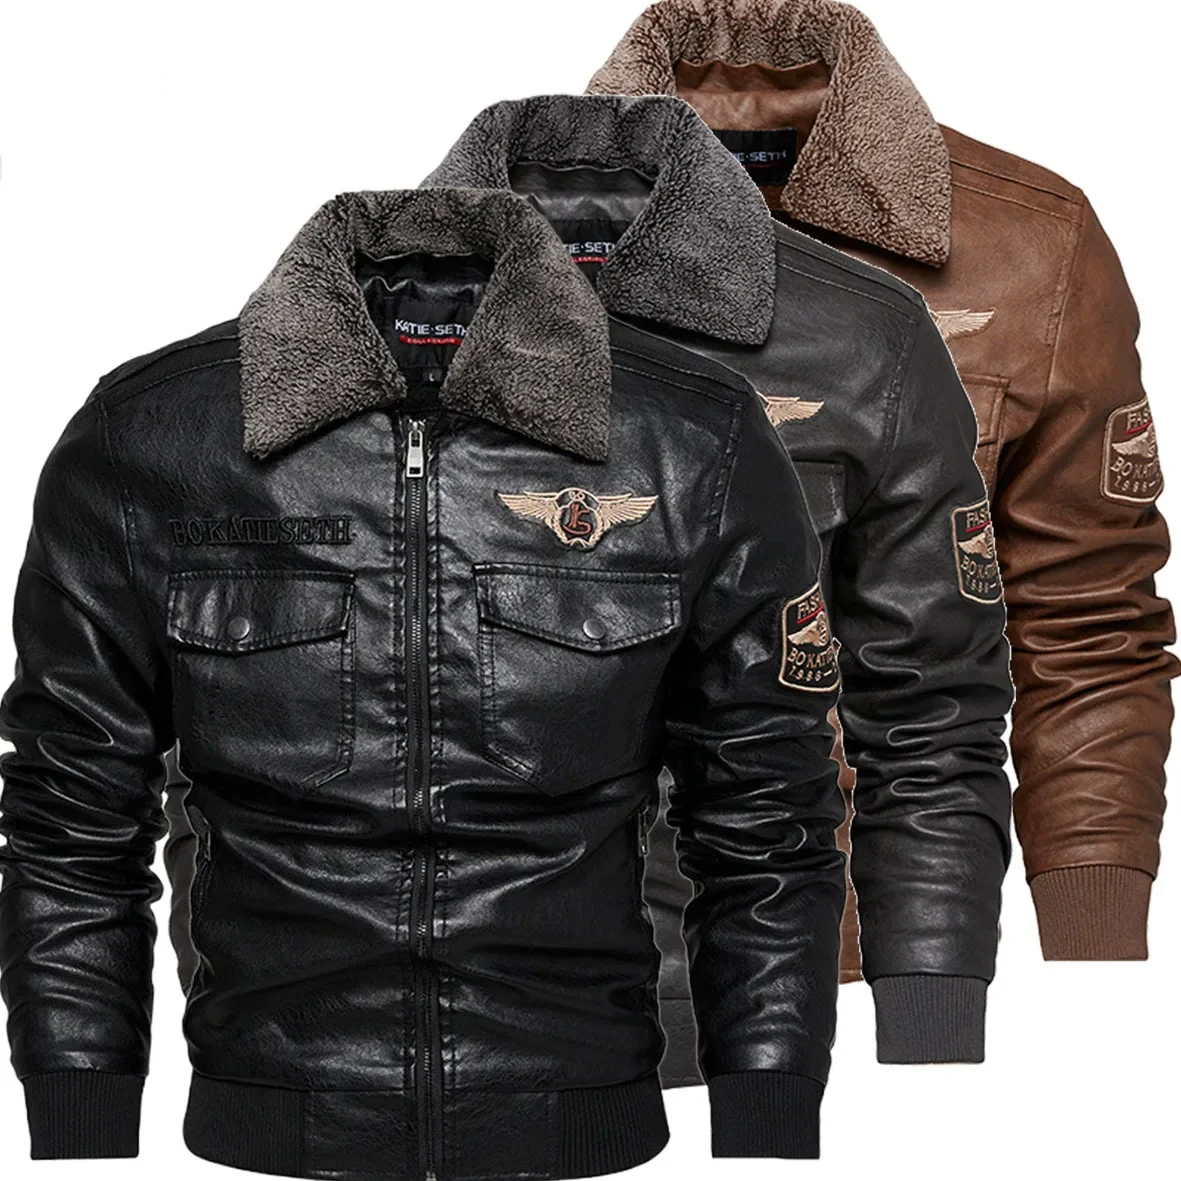 

Мужская байкерская куртка из искусственной кожи на флисе, Повседневная байкерская куртка на молнии, Мужская мотоциклетная куртка, приталенная верхняя одежда с меховой подкладкой